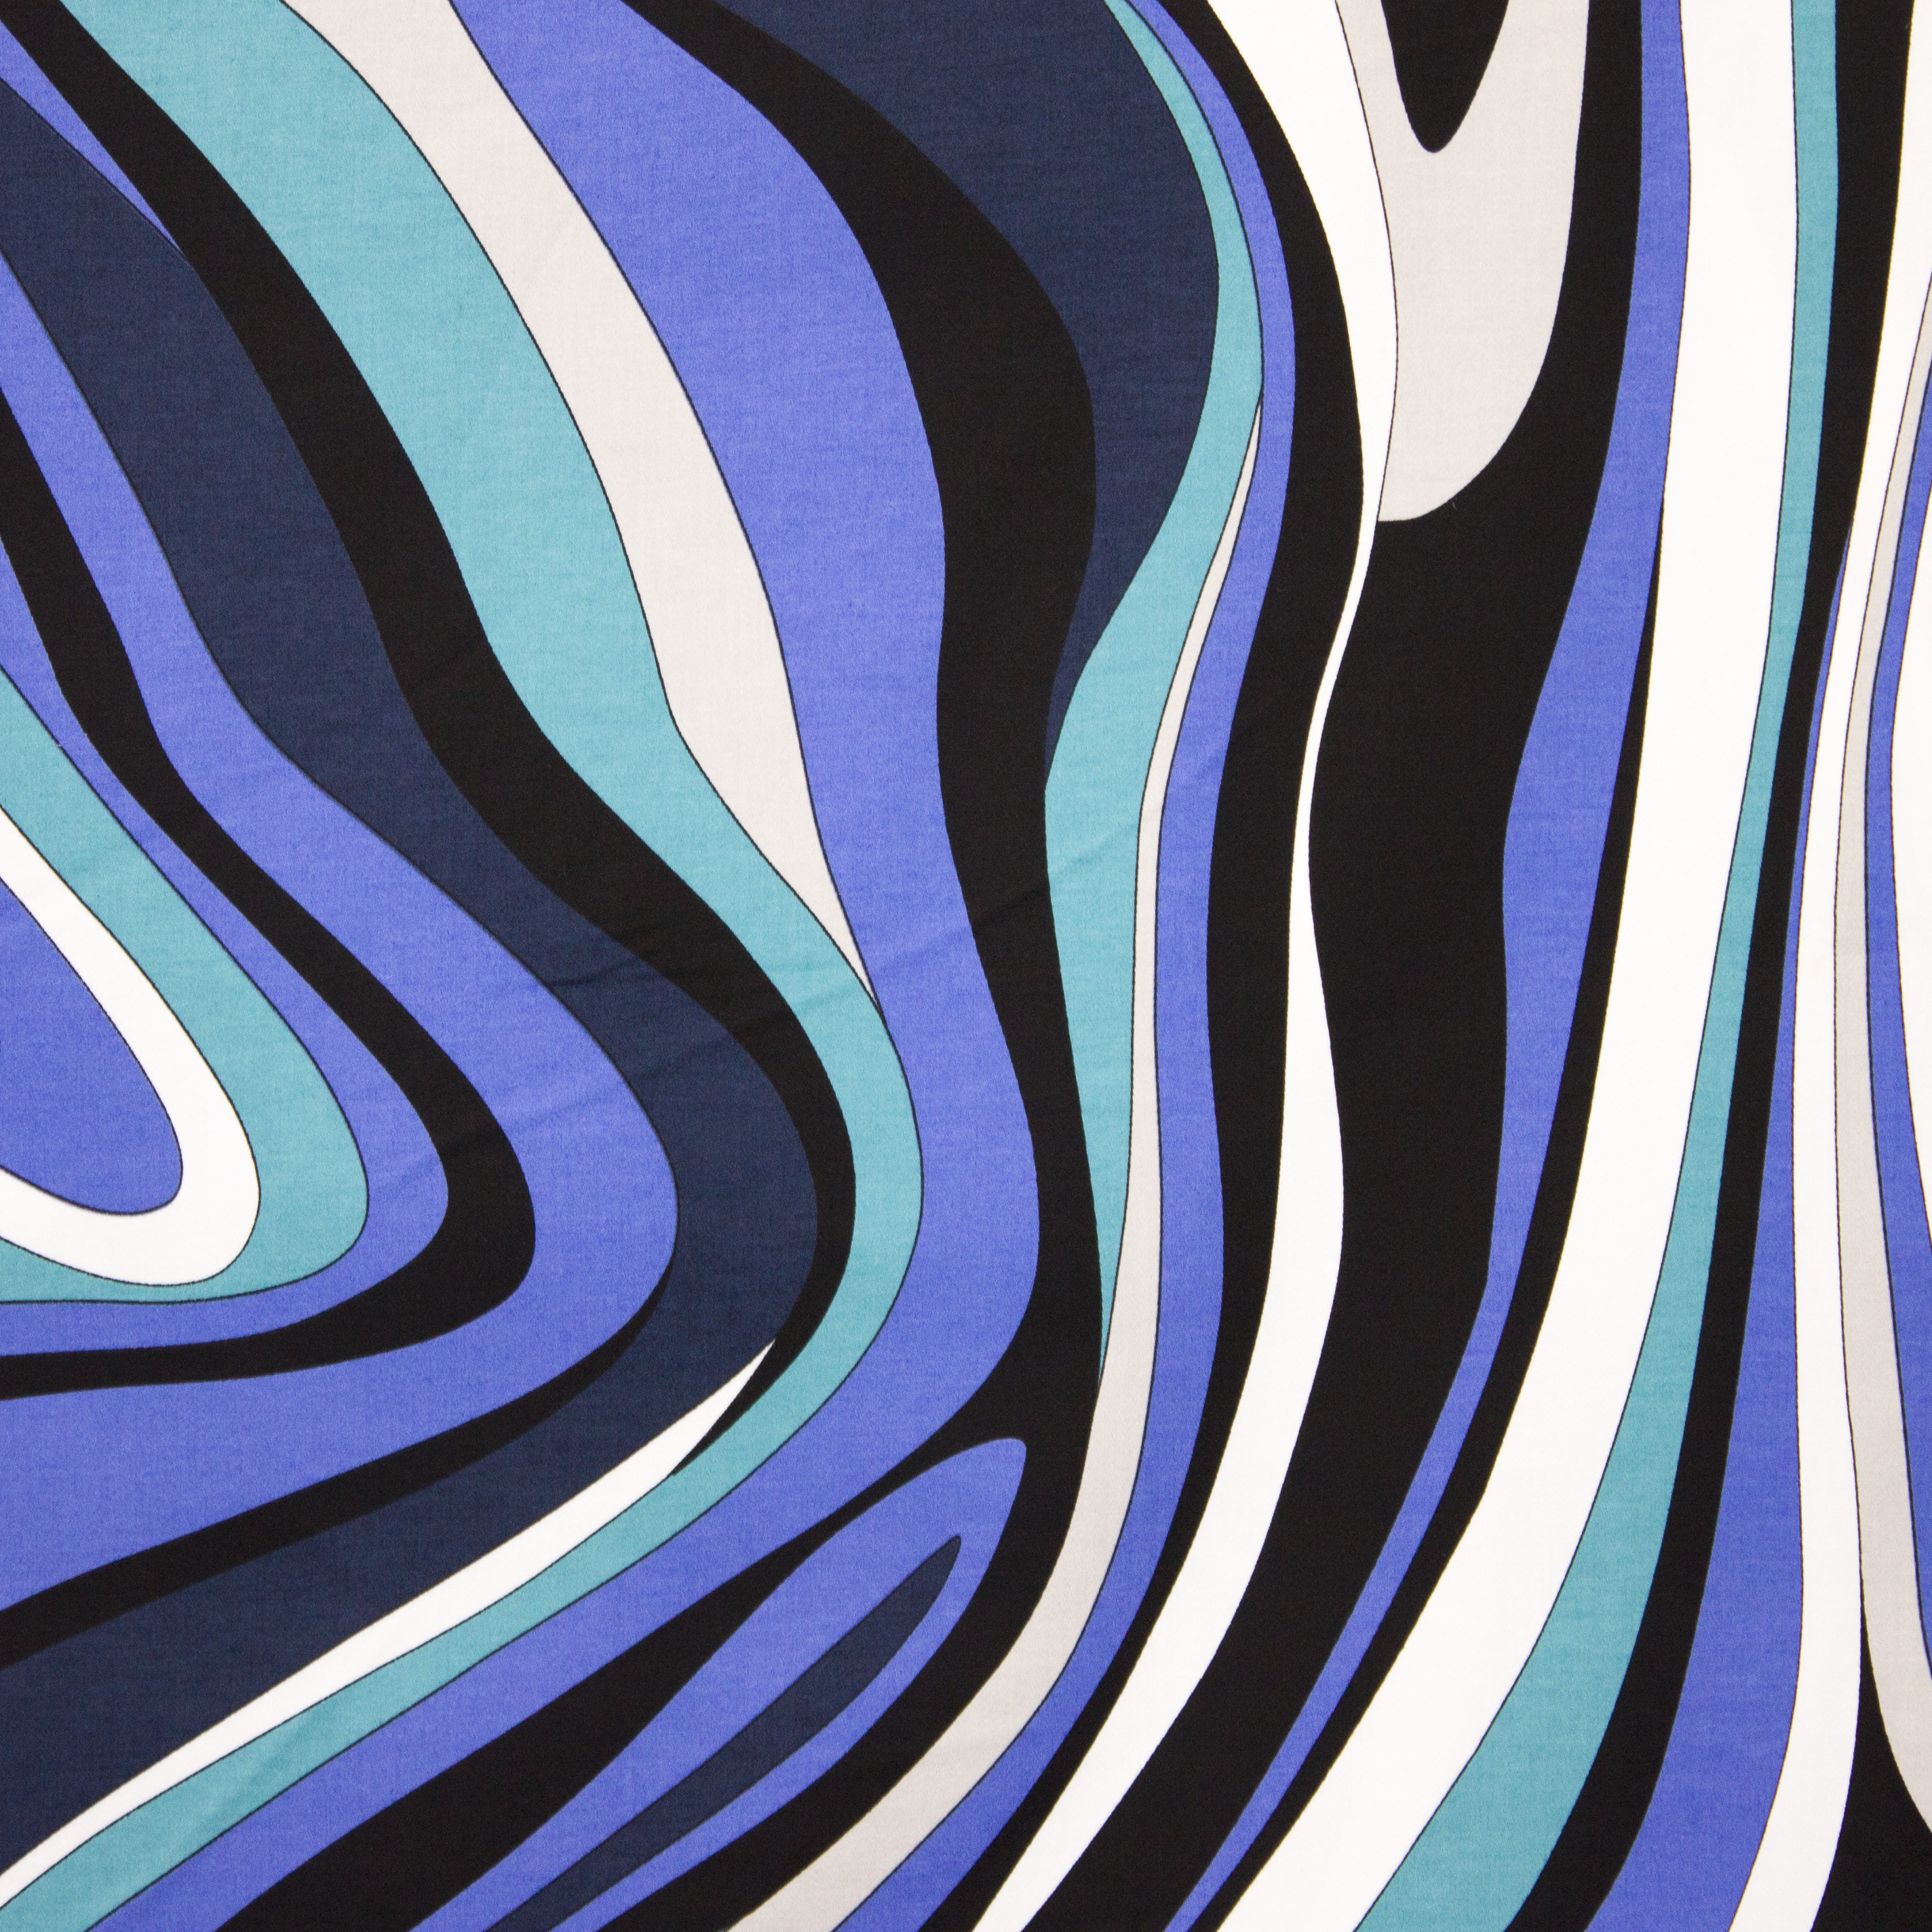 Katoen tricot met abstracte lijnen in blauwe en witte tinten